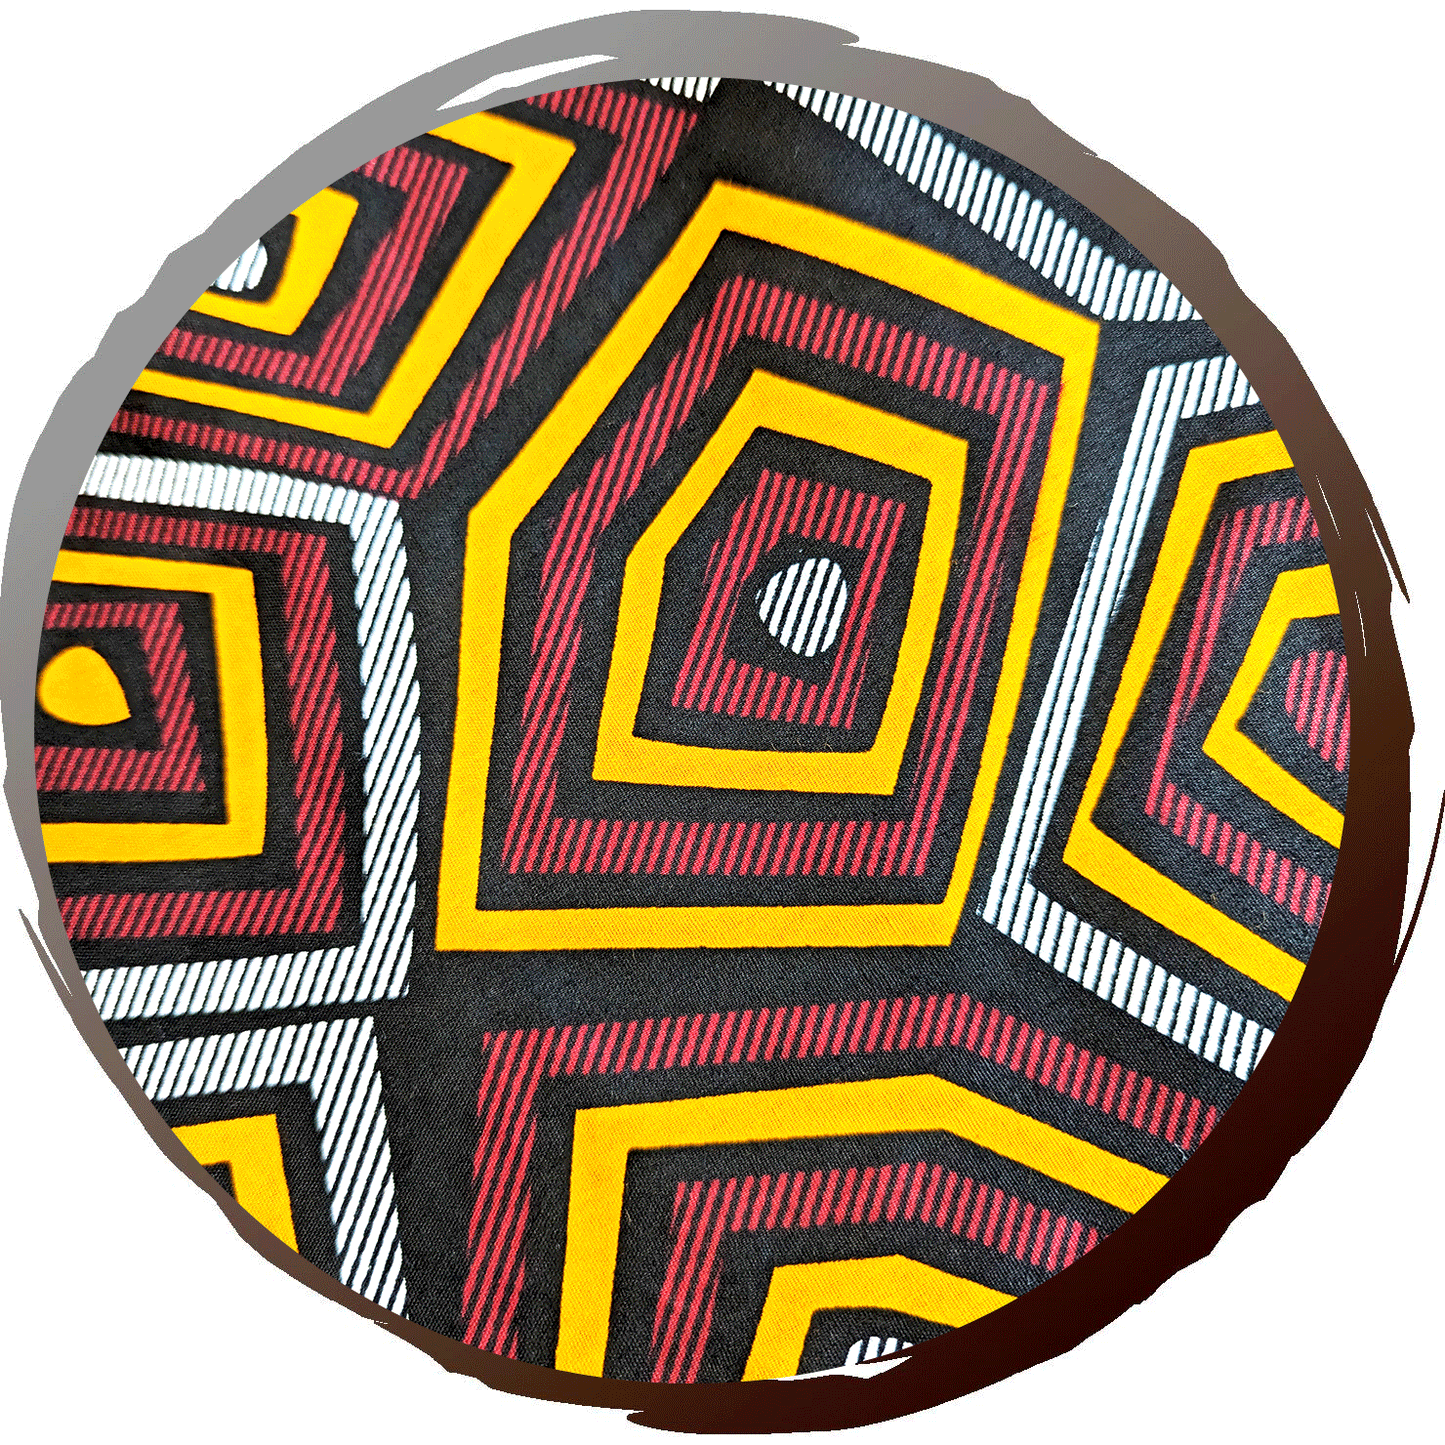 ギモノコート スカーレット（アフリカ布とベルベットのコート メンズ・レディース両対応）アフリカ布の柄イメージ